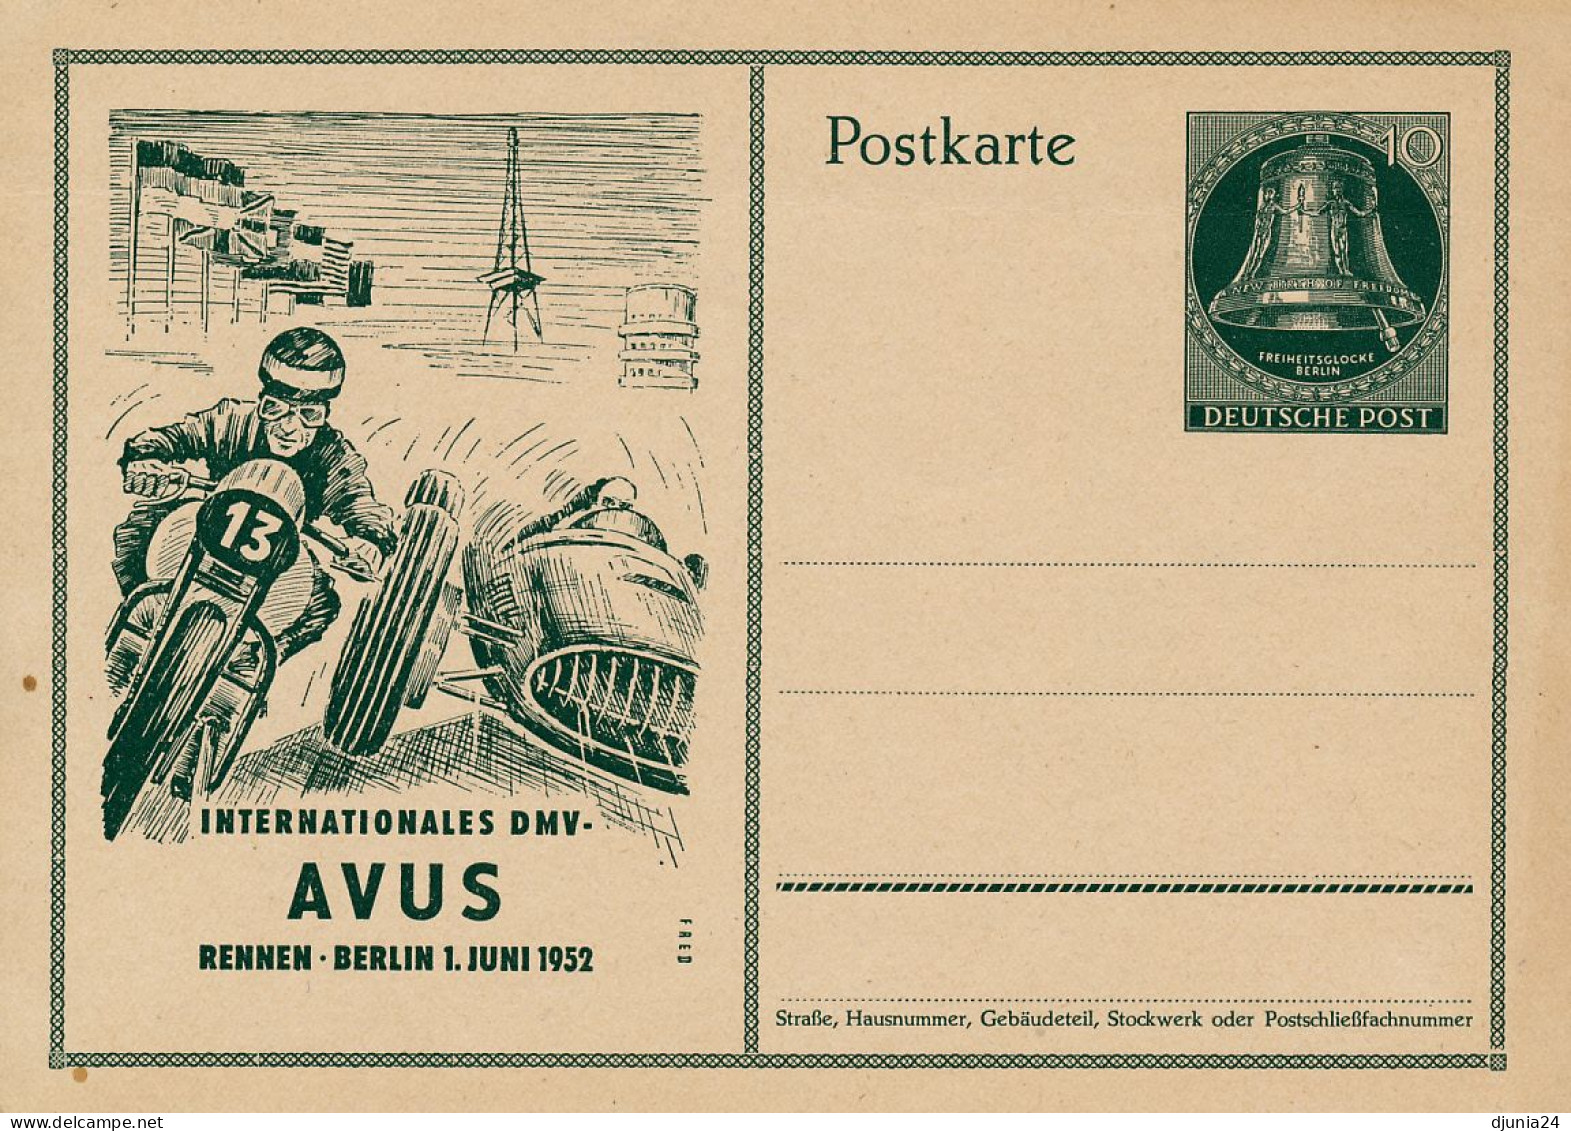 BF0793 / BERLIN - GLOCKE - 1951/1952 , 5 Amtliche Ganzsachen ** - Postkaarten - Ongebruikt